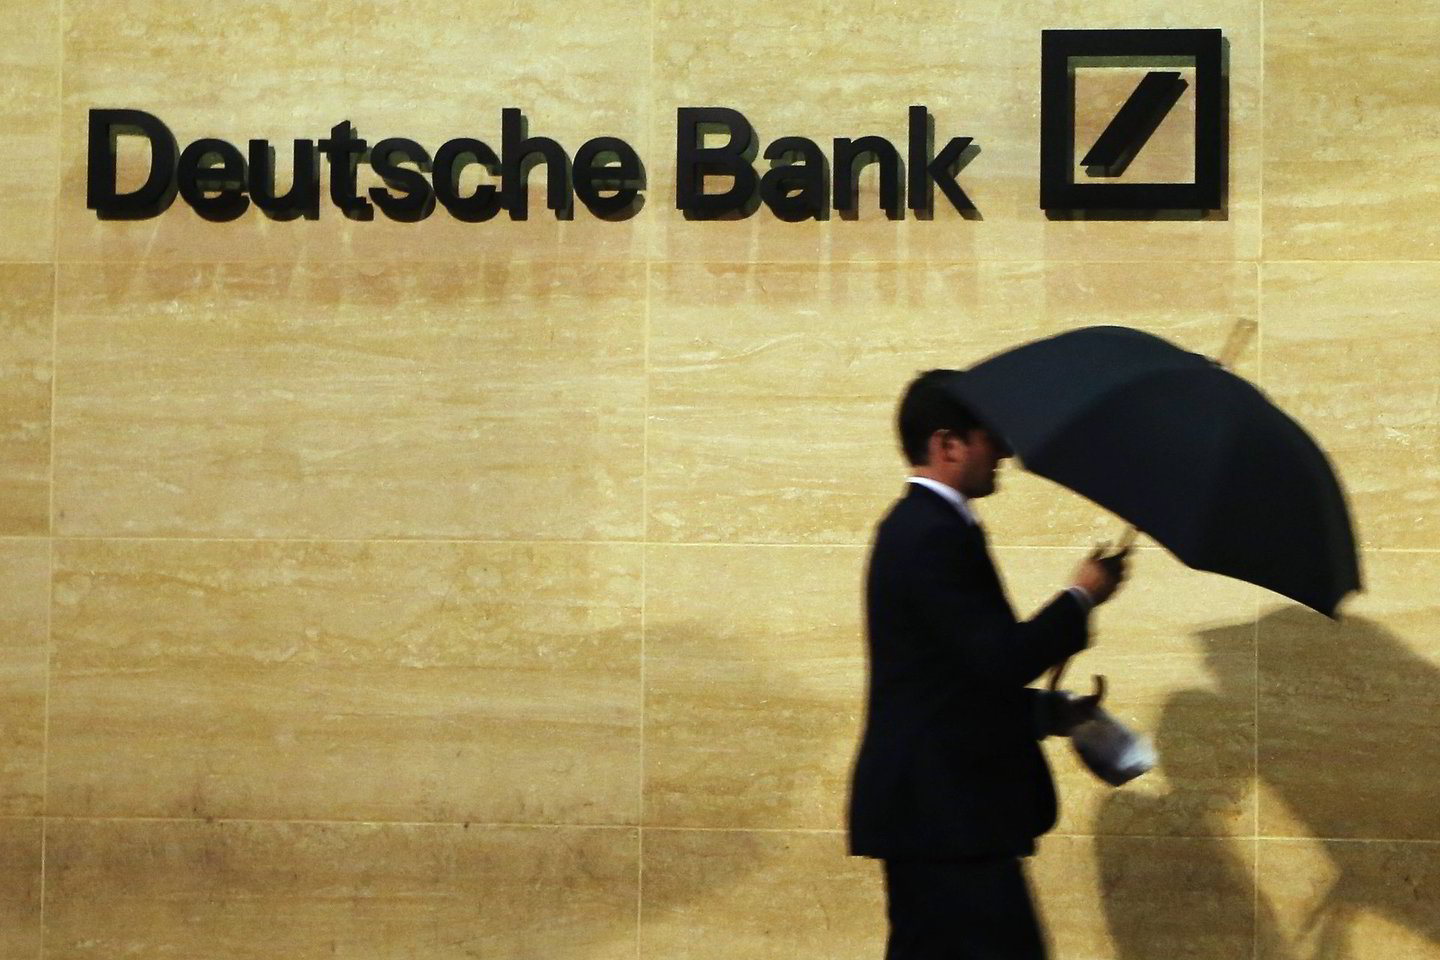 Vokietijos finansinė institucija patvirtino gavusi paklausimą iš JAV valdžios.<br>Reuters/Scanpix nuotr.